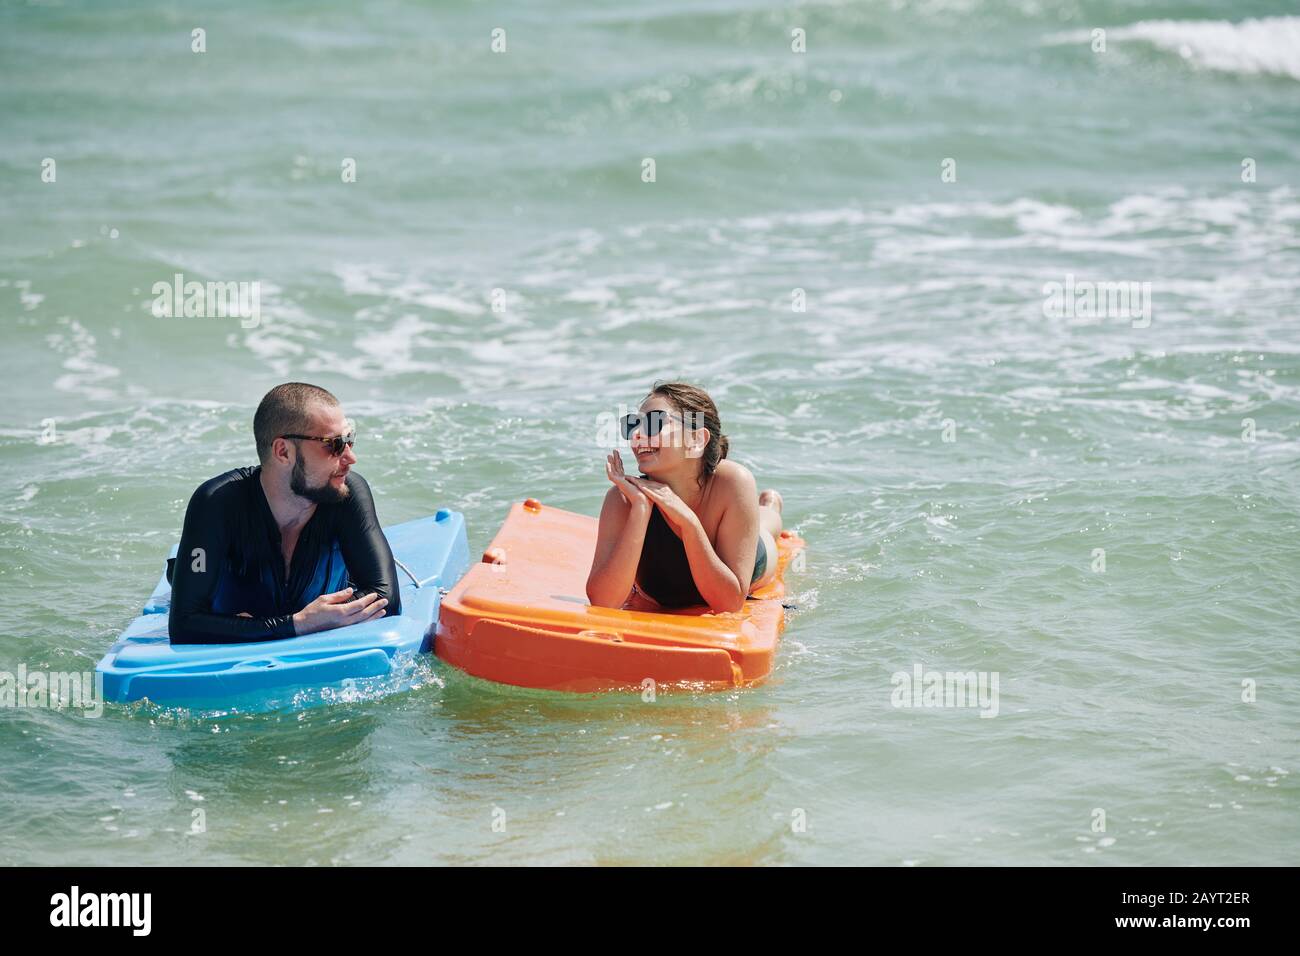 Glücklicher junger Mann und Frau, die sich nach dem Schwimmen im Meerestiergerät in Kunststoffmatratzen ausruhen Stockfoto